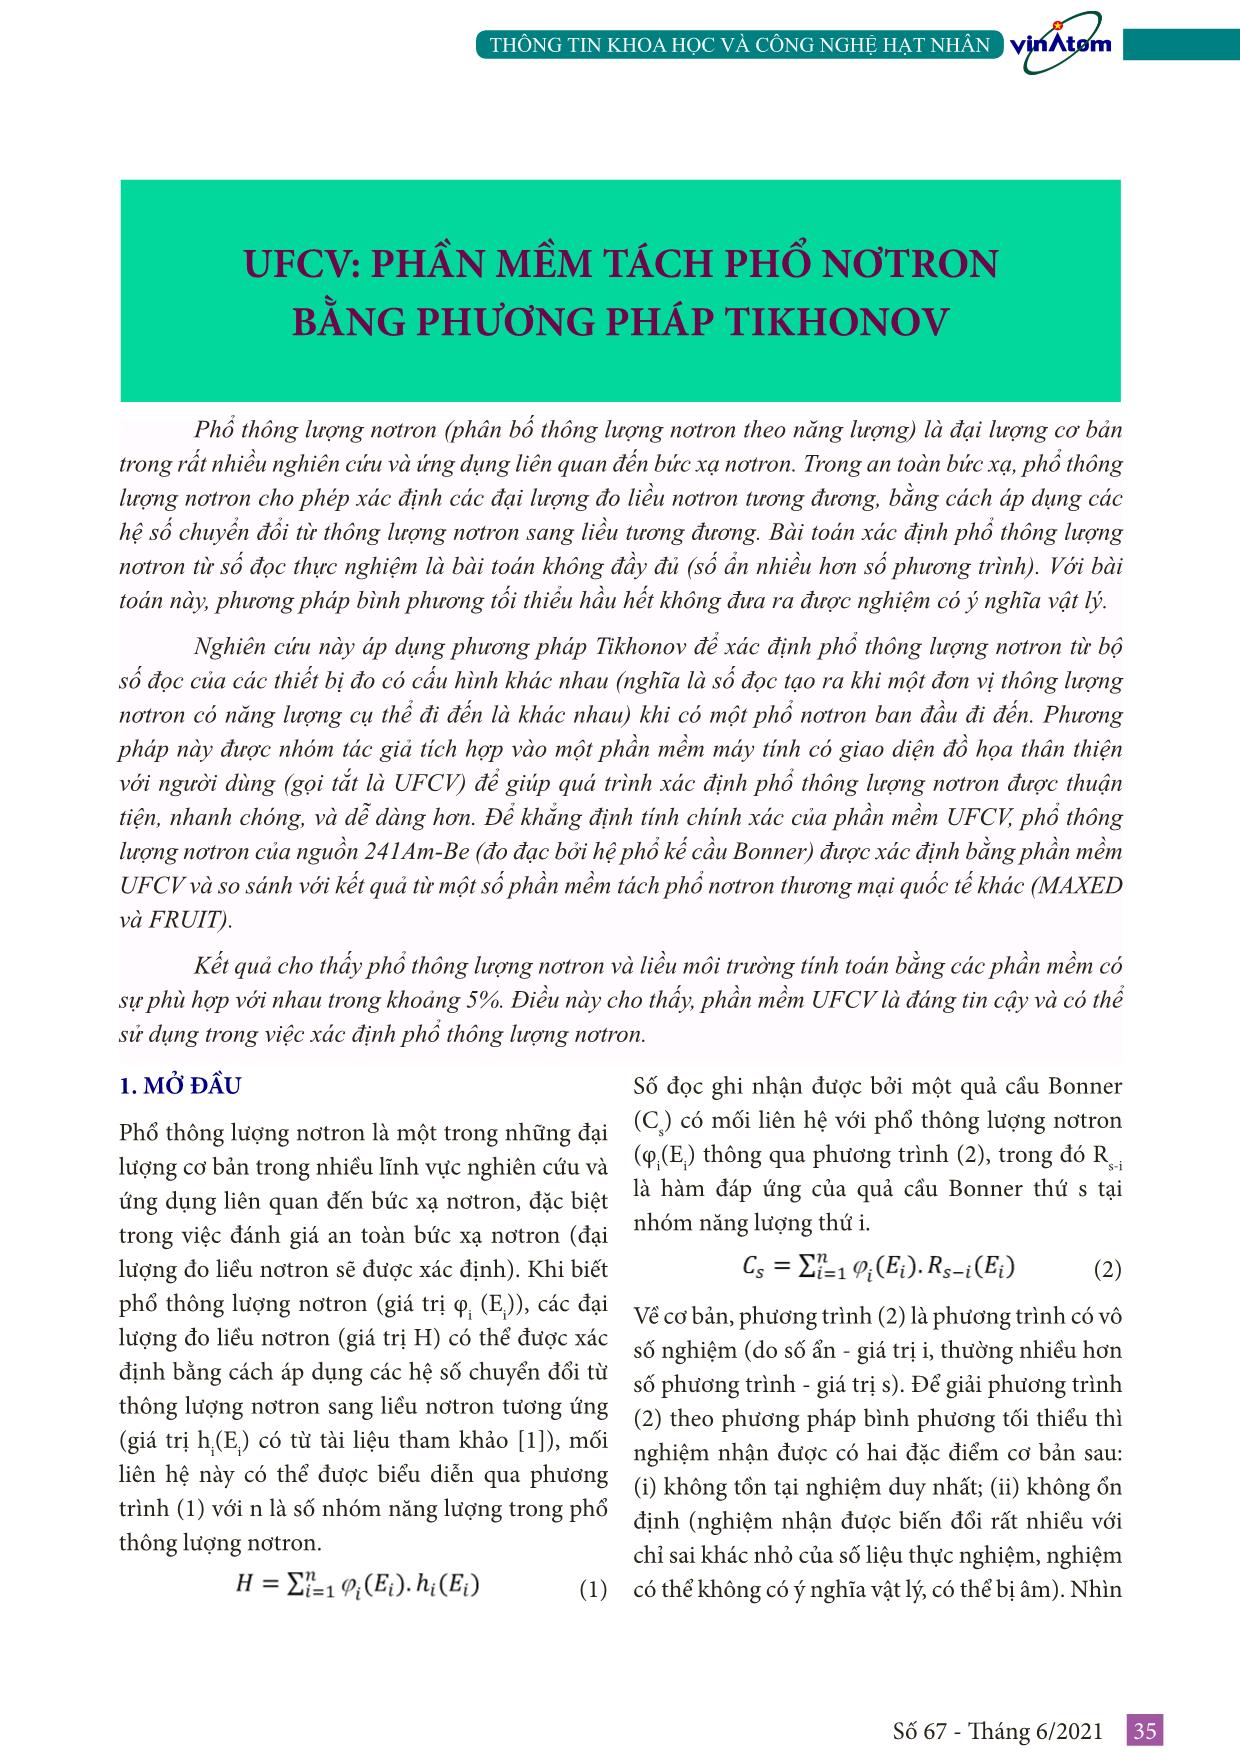 UFCV: Phần mềm tách phổ nơtron bằng phương pháp Tikhonov trang 1